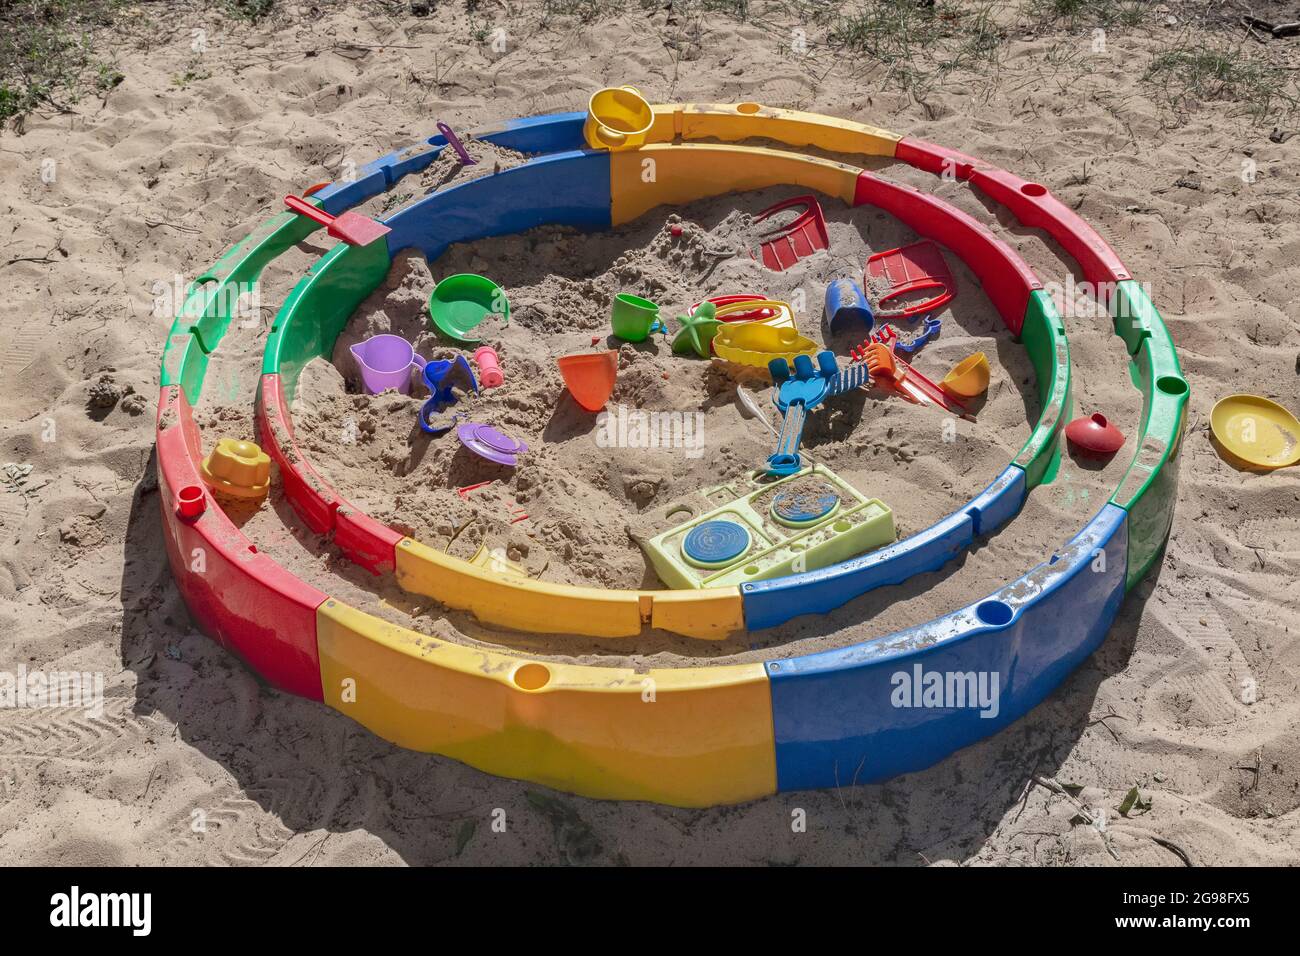 Al frente garrapata Estructuralmente Una pequeña caja de arena con juguetes para niños Fotografía de stock -  Alamy